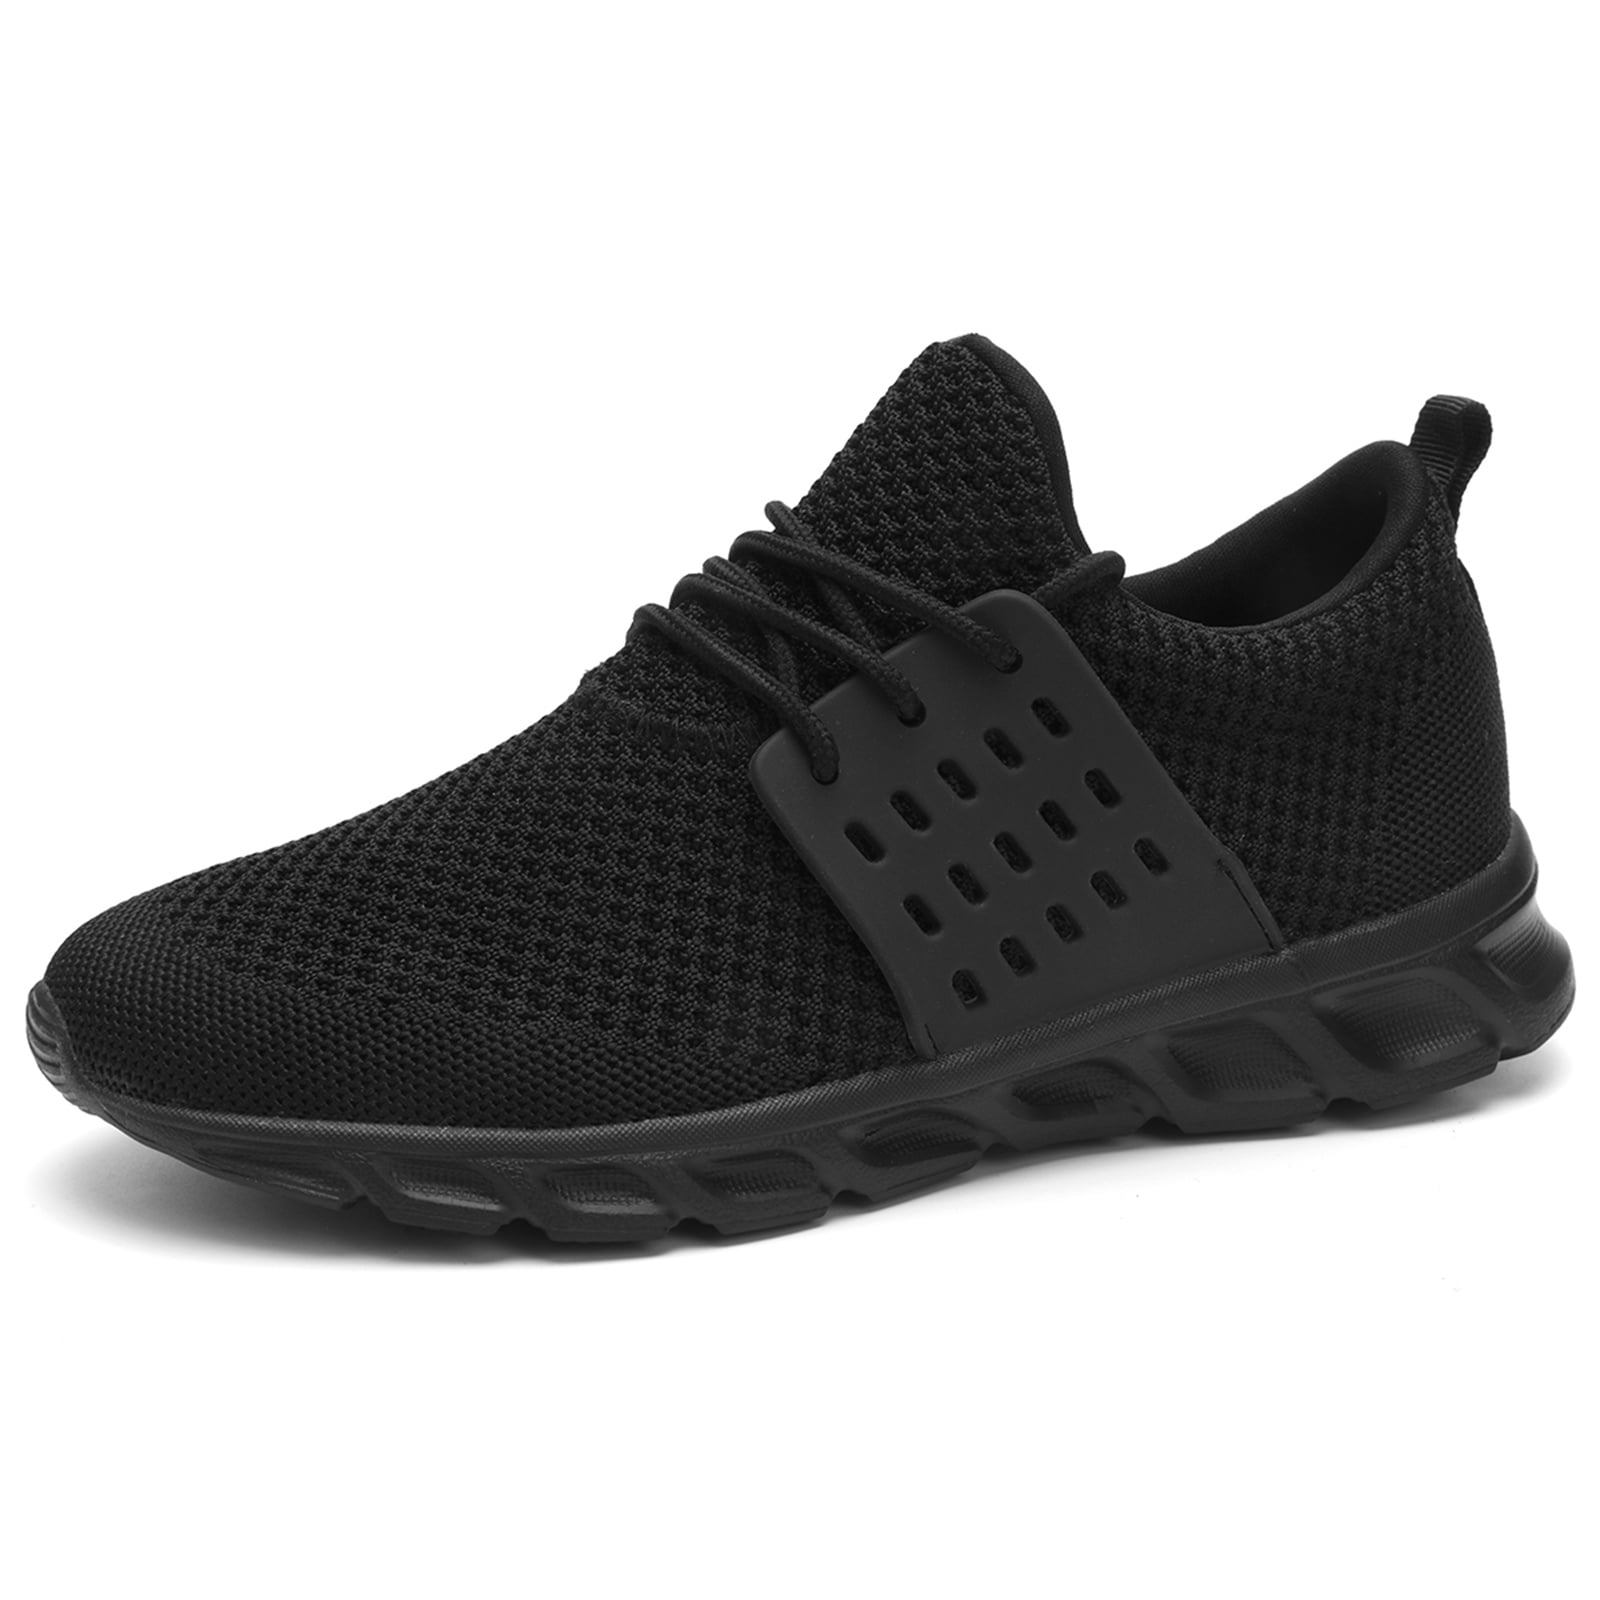 DaoLxi Women's Sneakers Walking Running Shoes Black Size 8.0 - Walmart.com